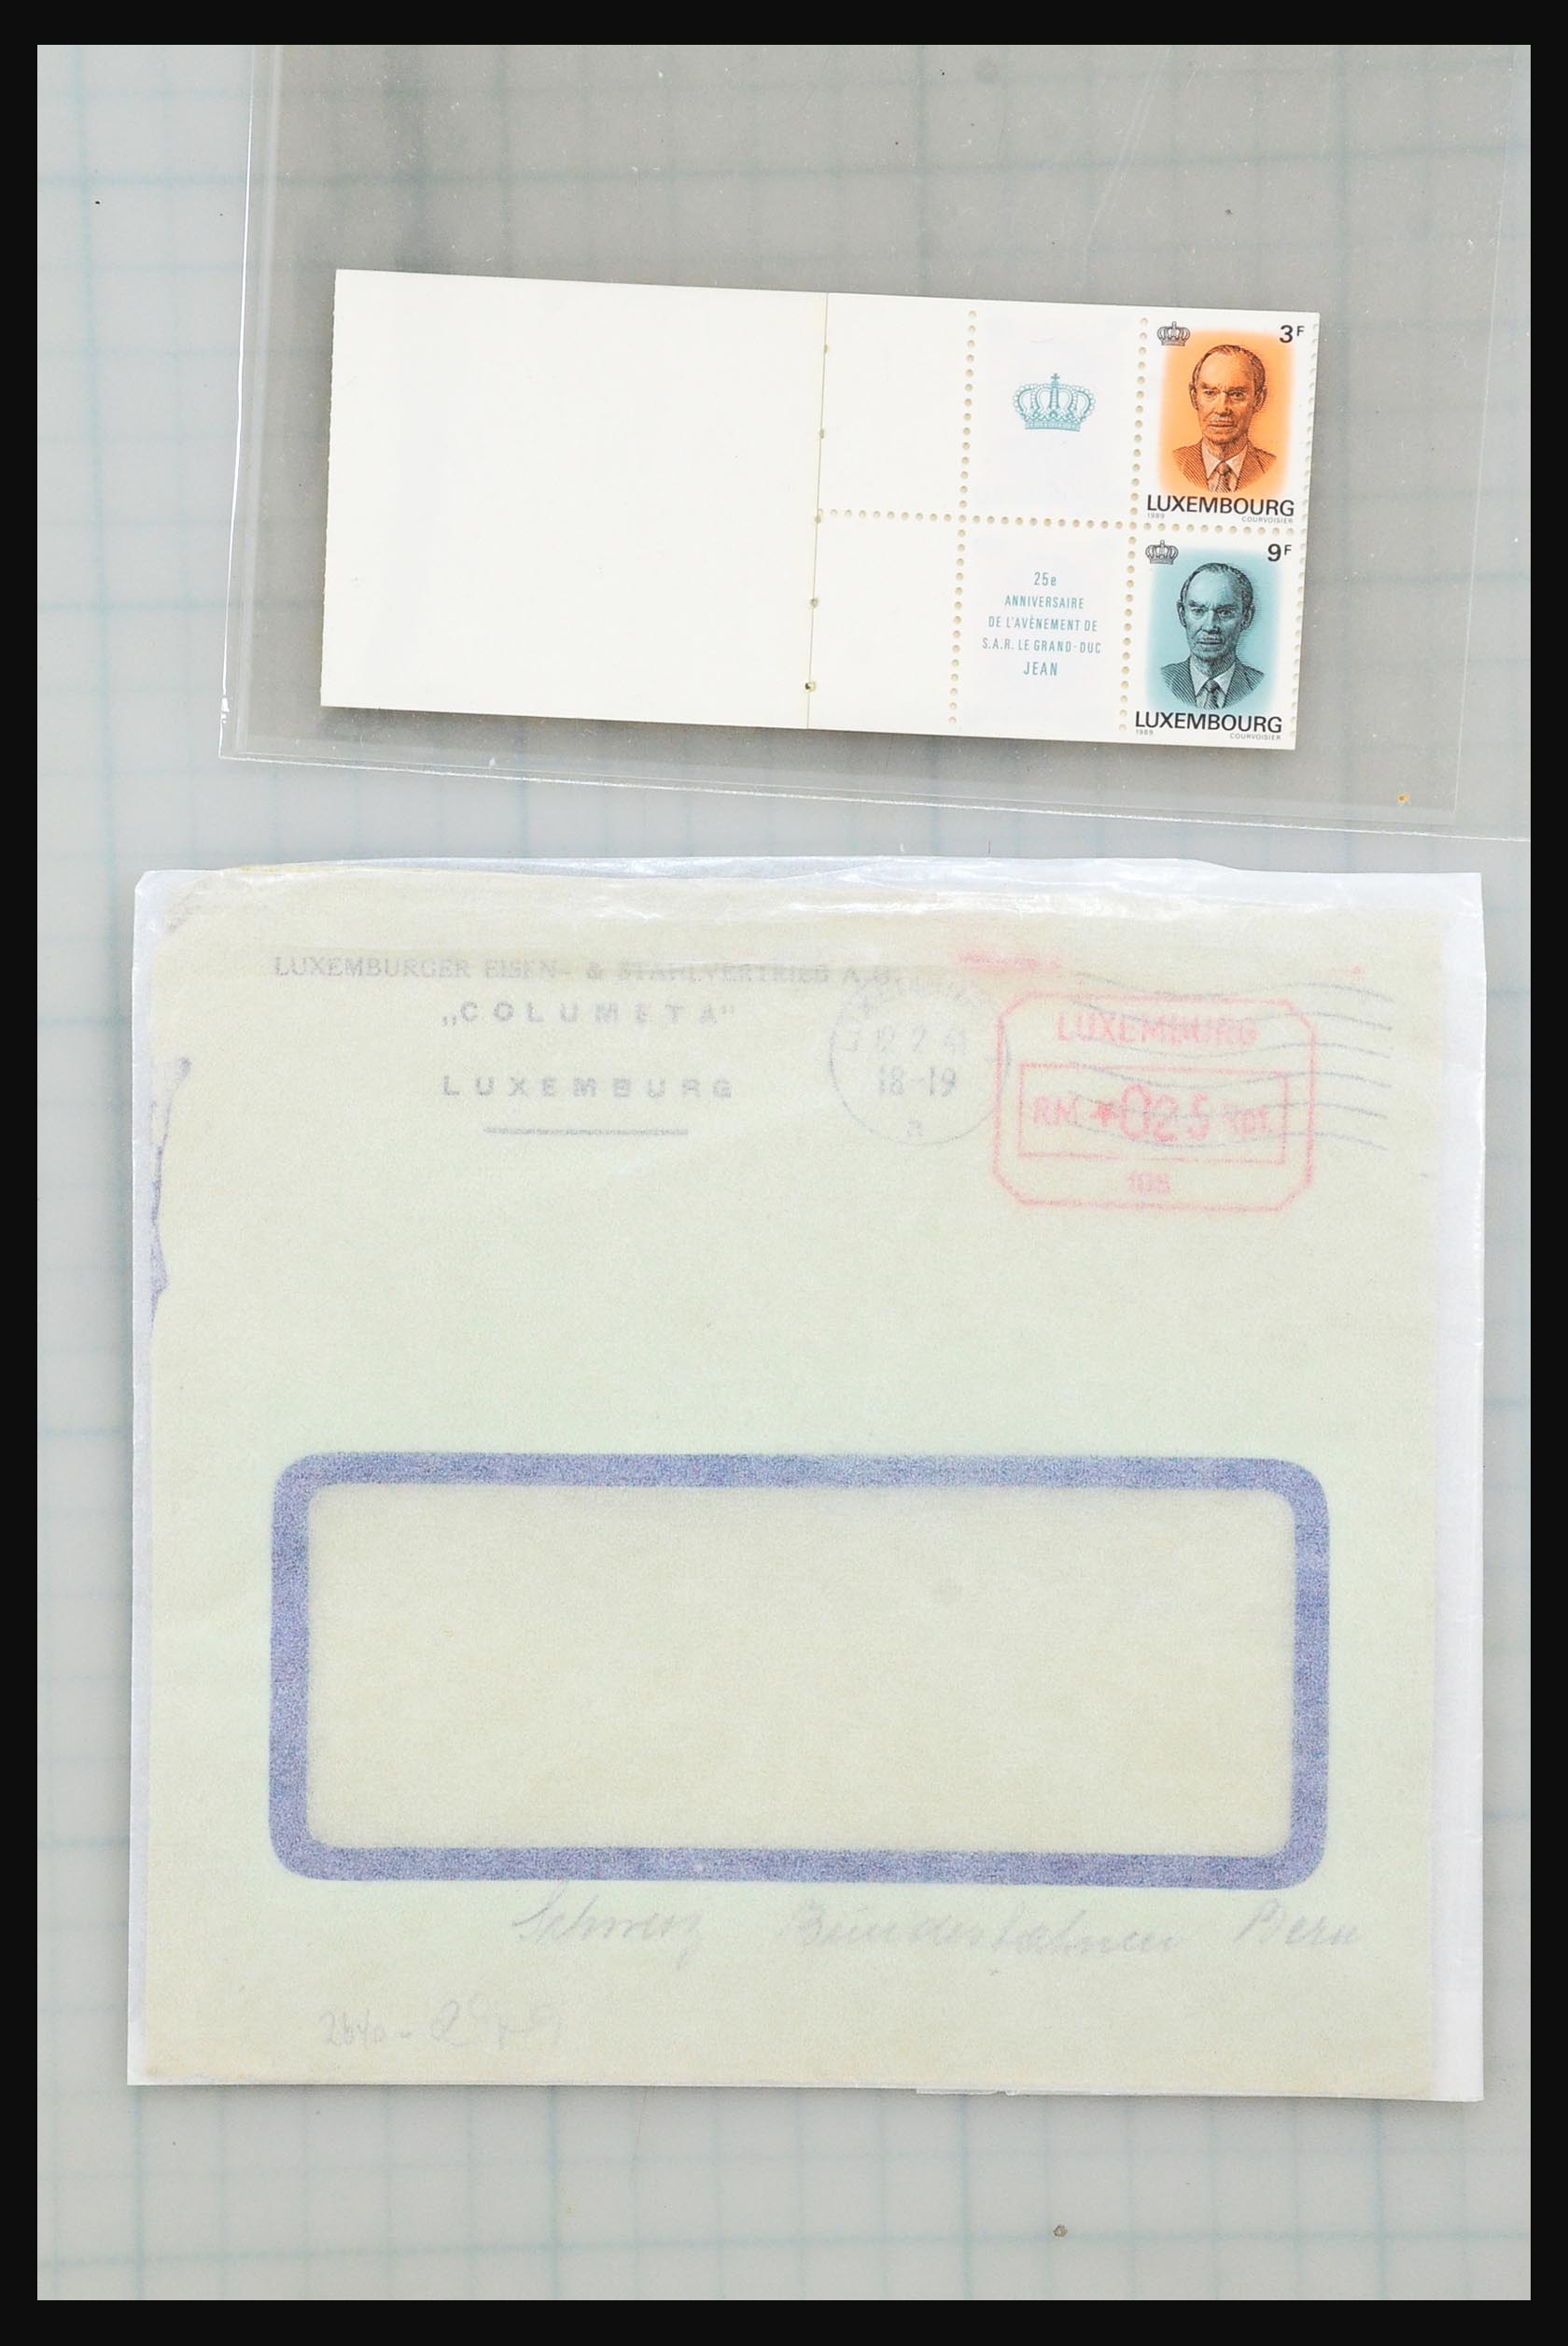 31358 039 - 31358 Portugal/Luxemburg/Griekenland brieven 1880-1960.